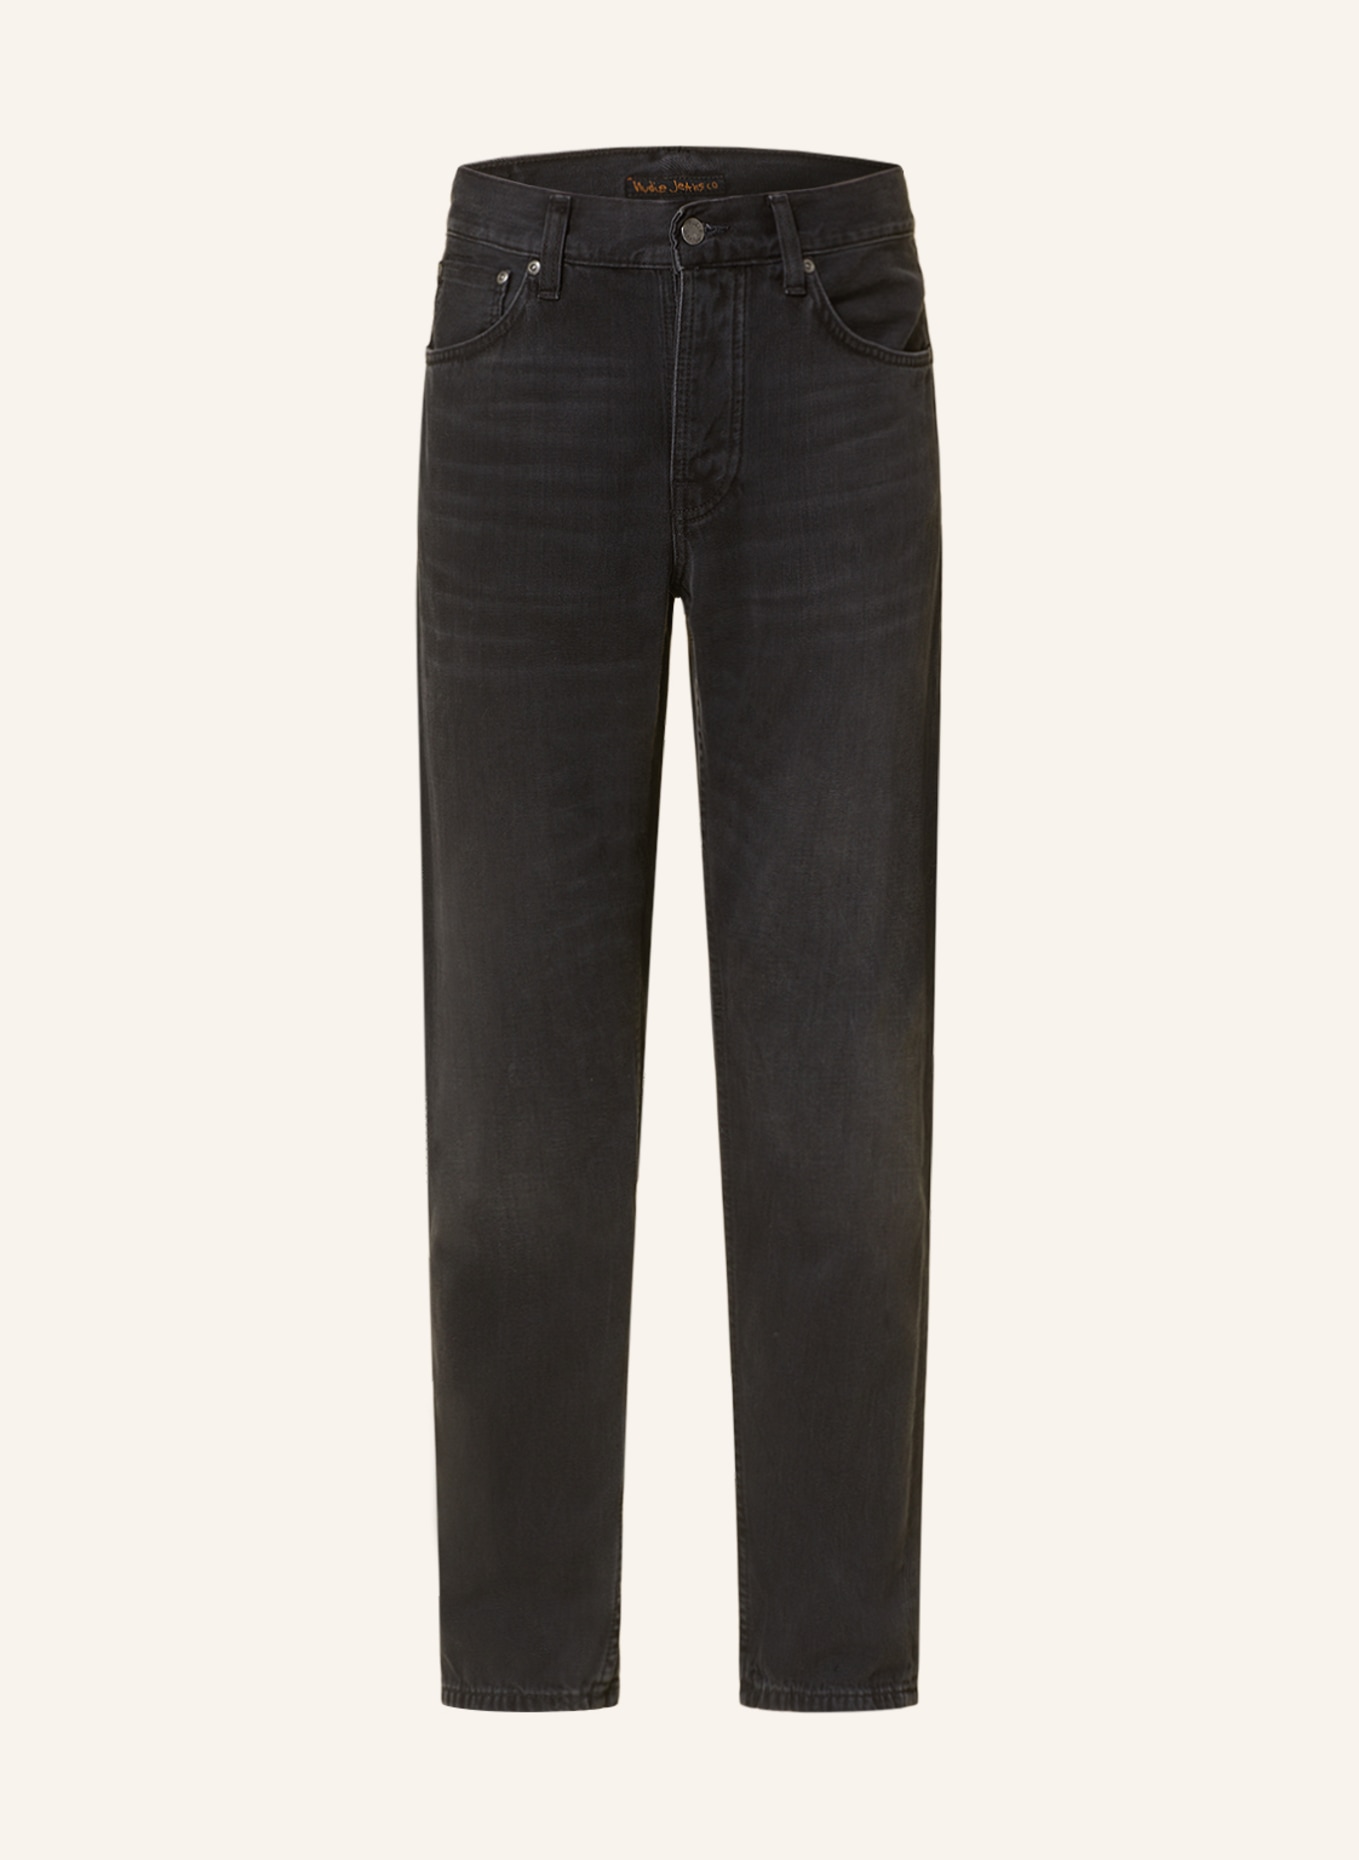 Nudie Jeans Jeans STEADY EDDIE II tapered fit, Color: Black Change (Image 1)